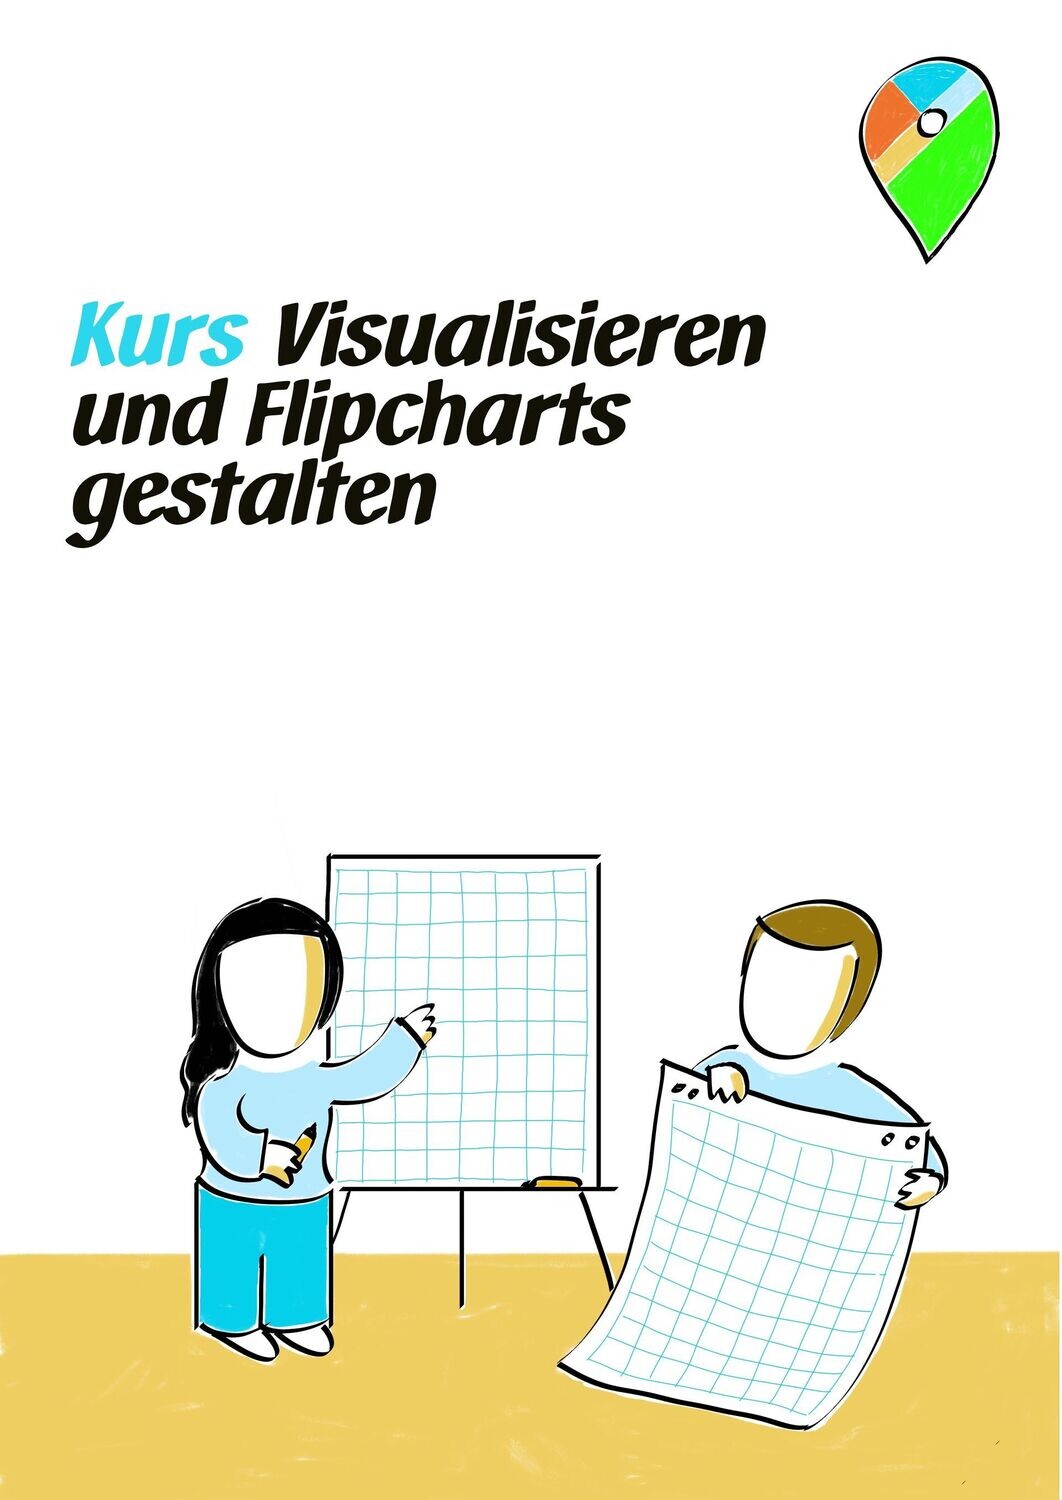 Kurs Flipcharts gestalten in Bremen